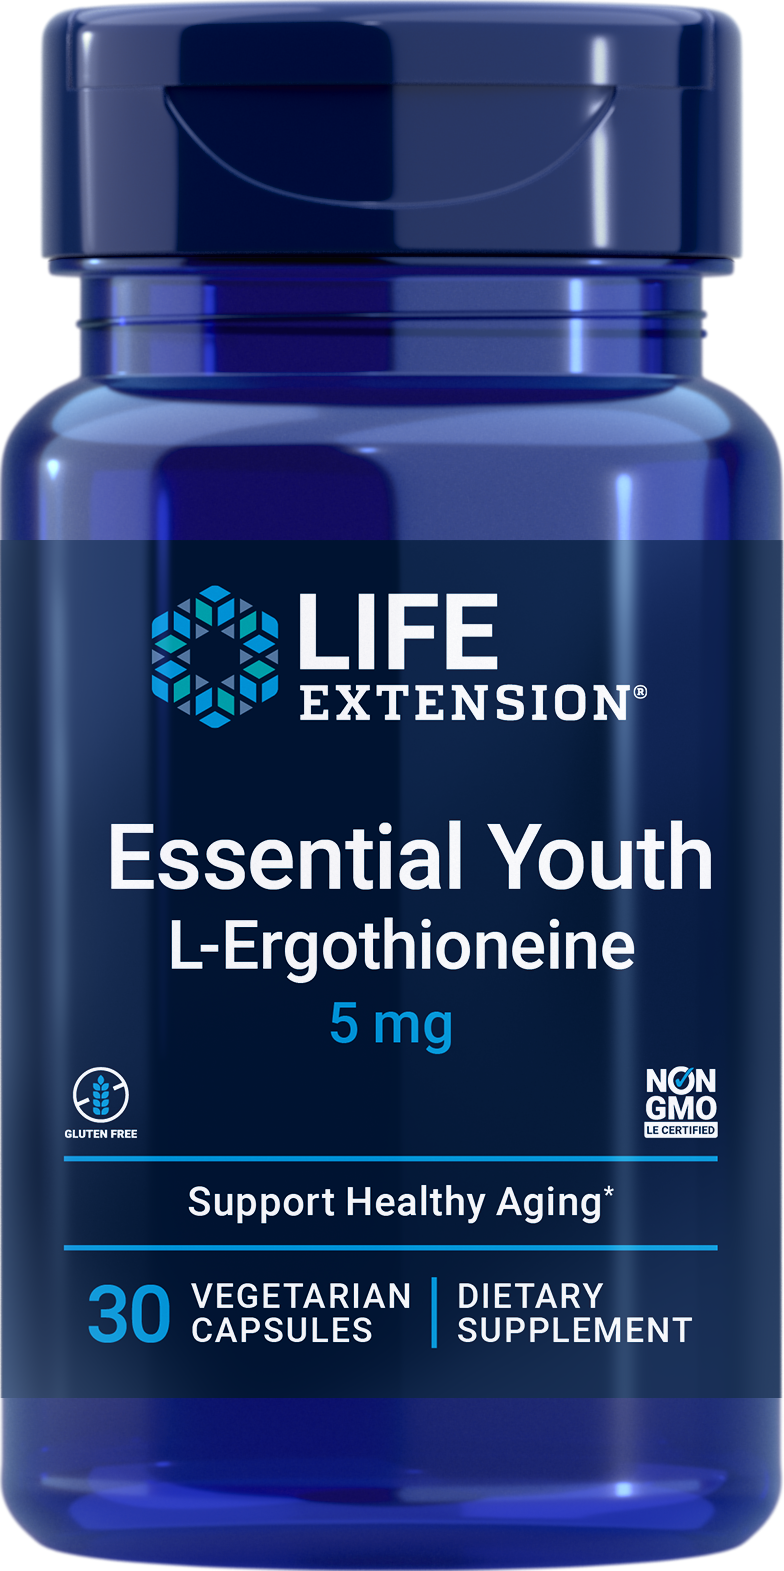 Life Extension Essential Youth L-Ergotioneína, 30 cápsulas vegetales con propiedades de longevidad y protección celular